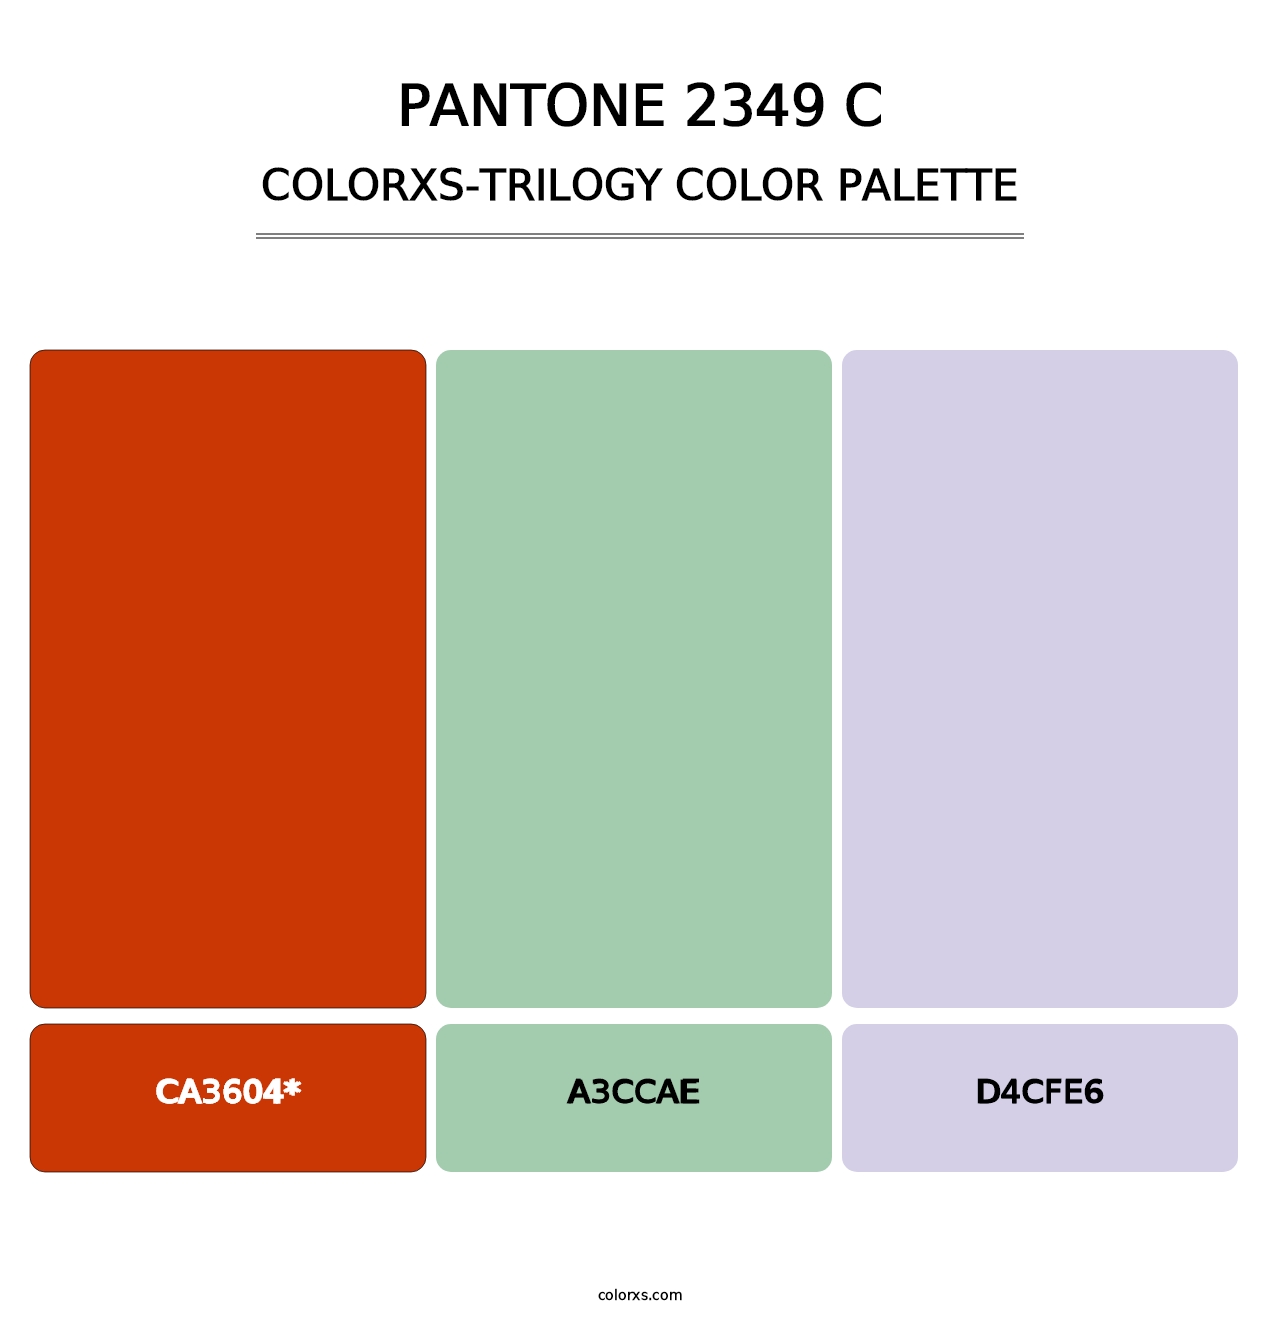 PANTONE 2349 C - Colorxs Trilogy Palette